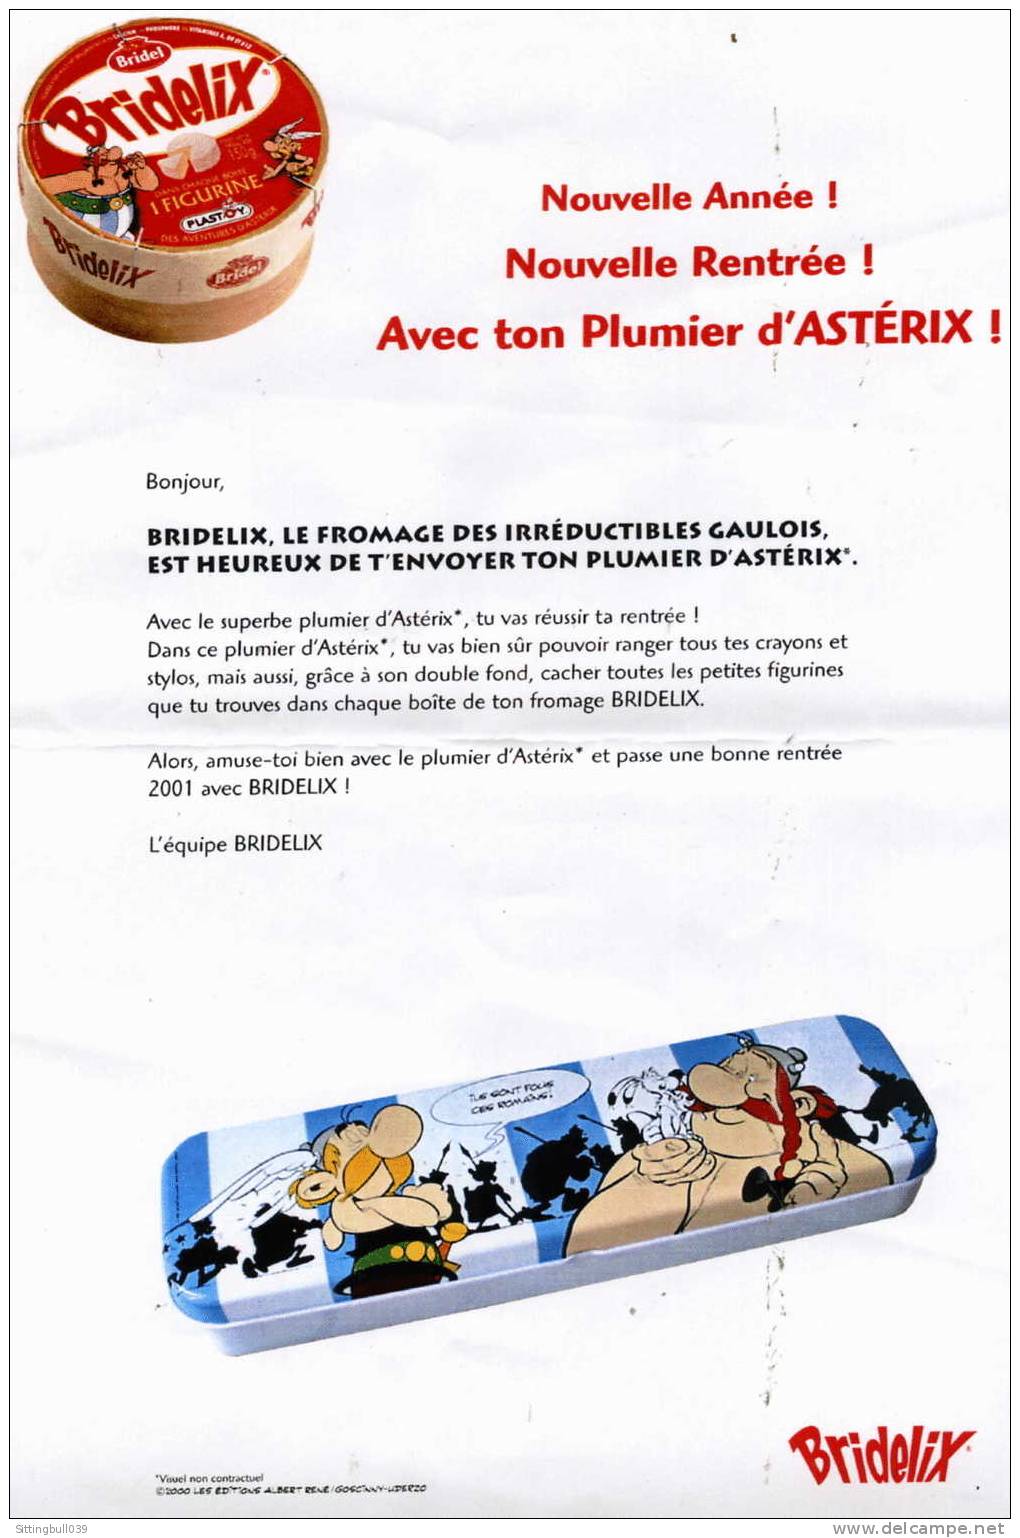 asterix  publicite bridelix accompagnee du cadeau   le plumier asterix  1996 les ed  albert ren u00e9